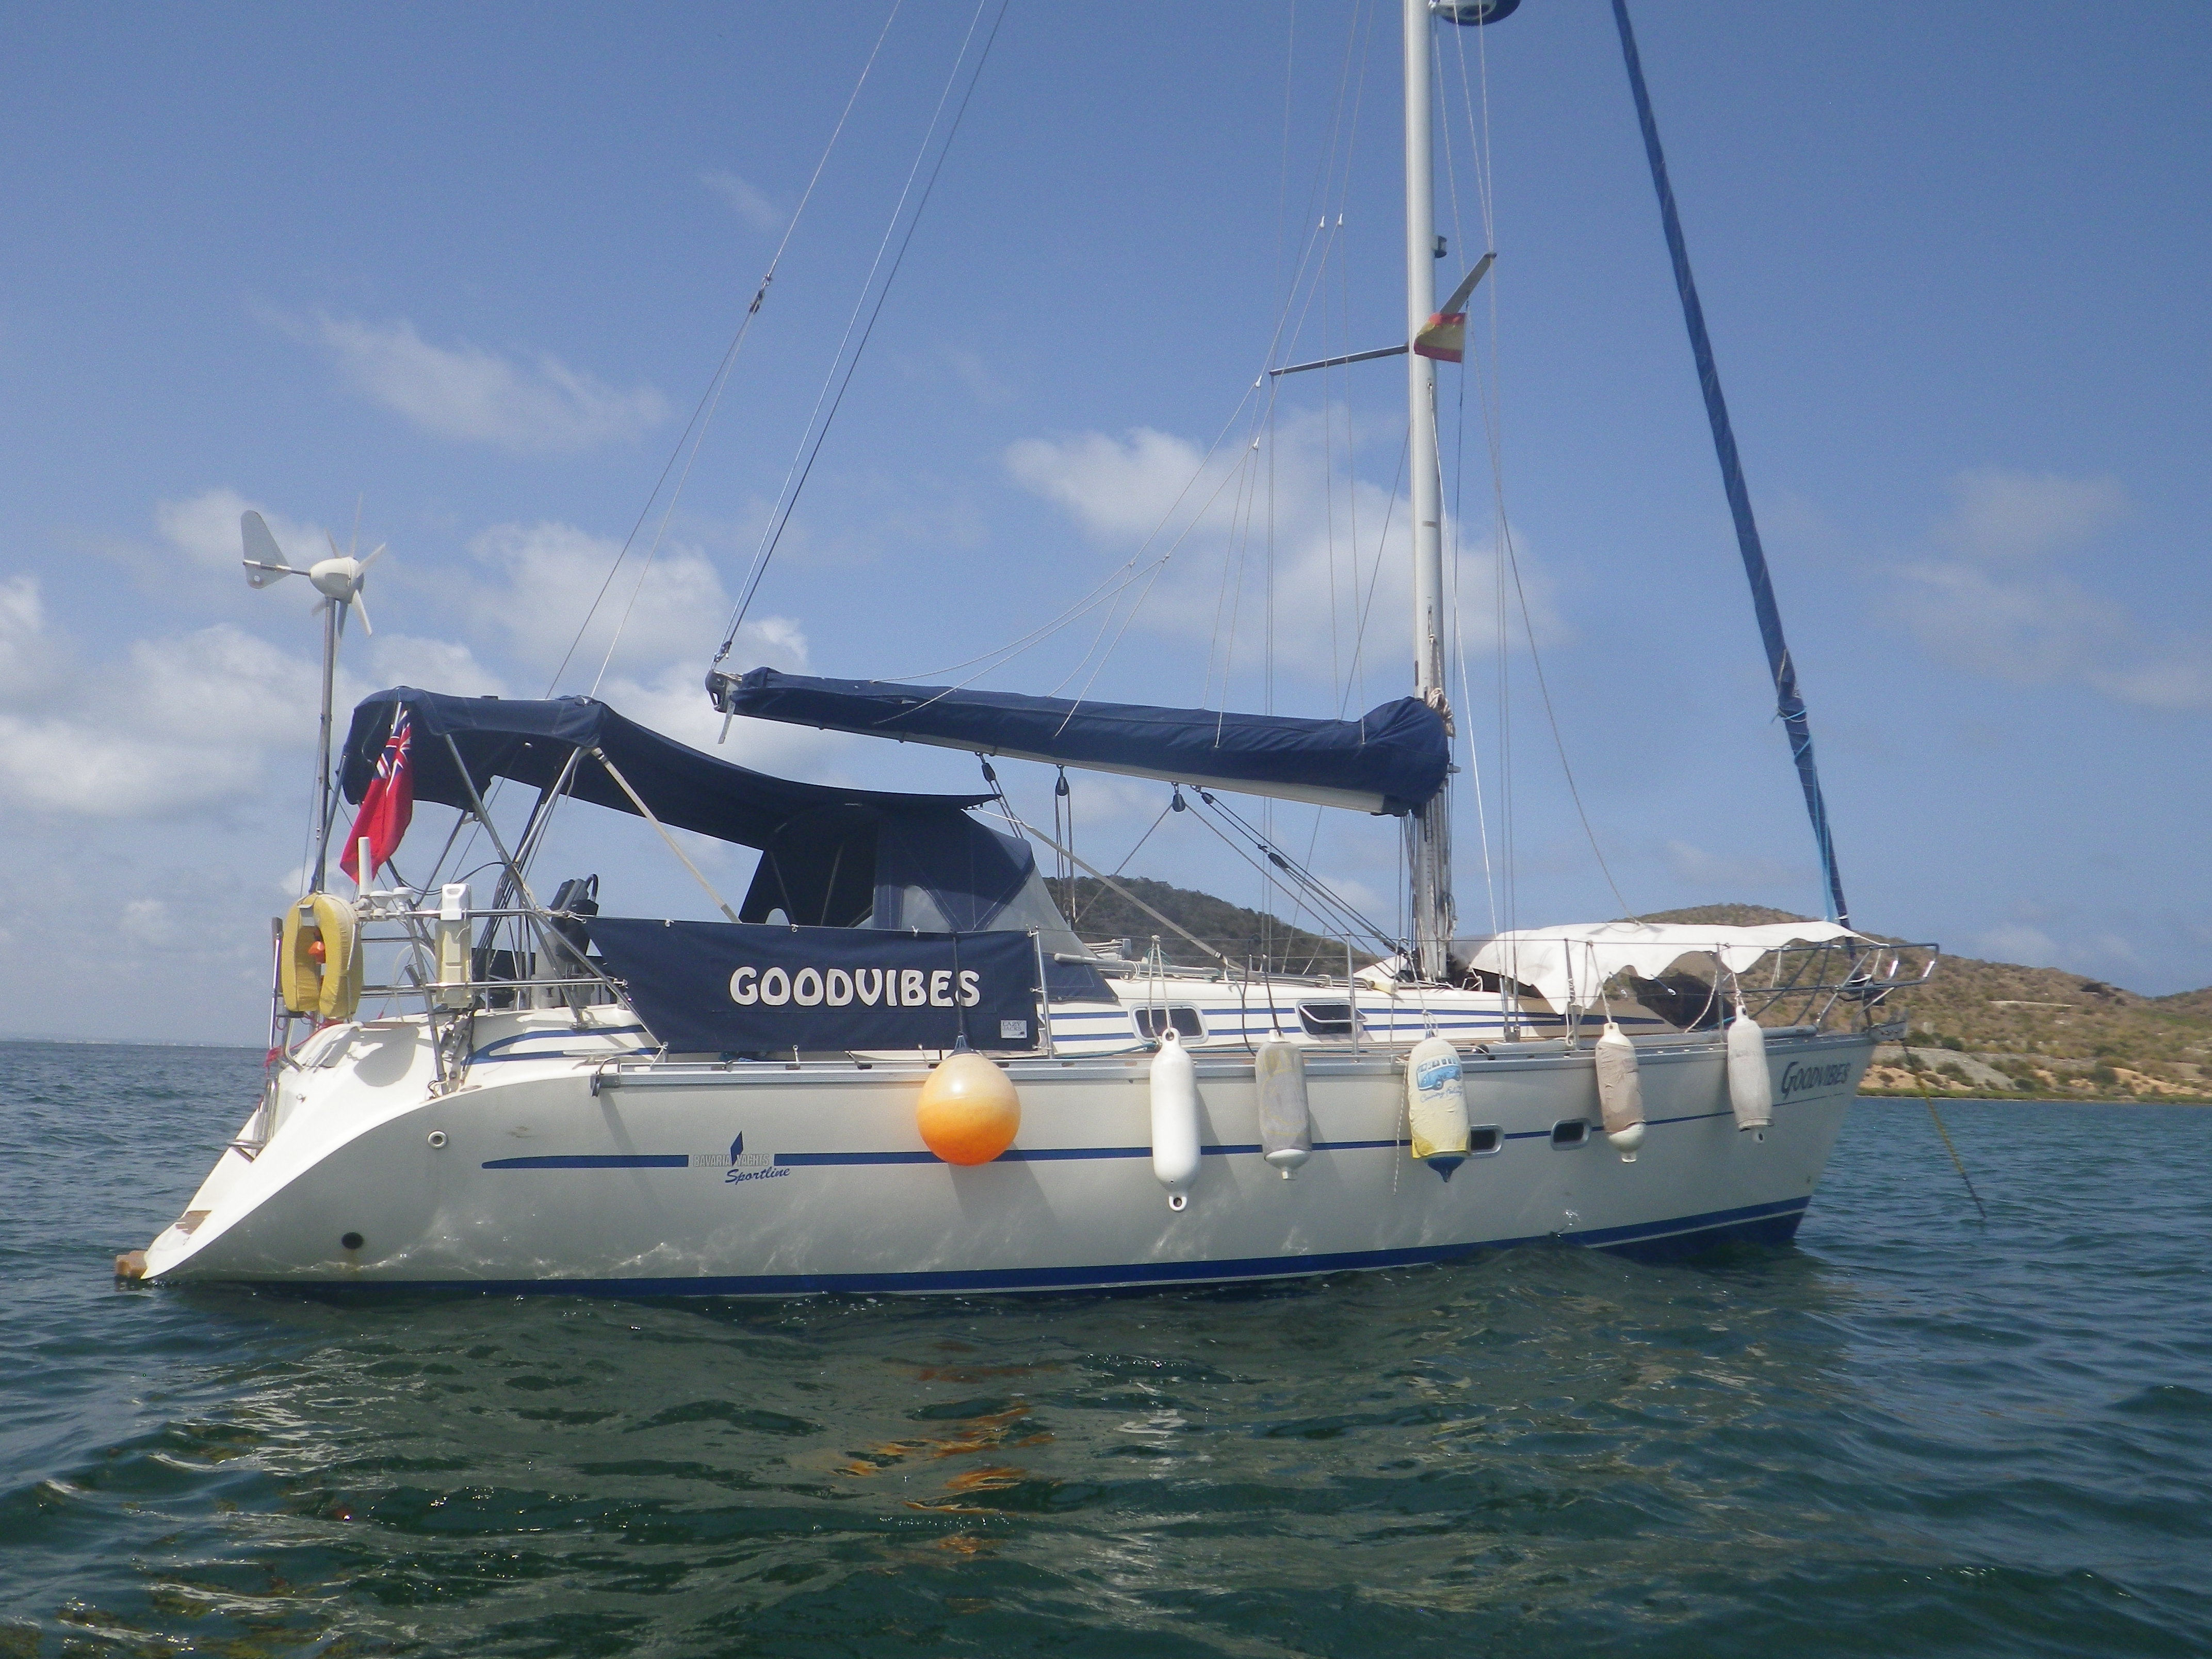 sailing yacht Goodvibes at anchor